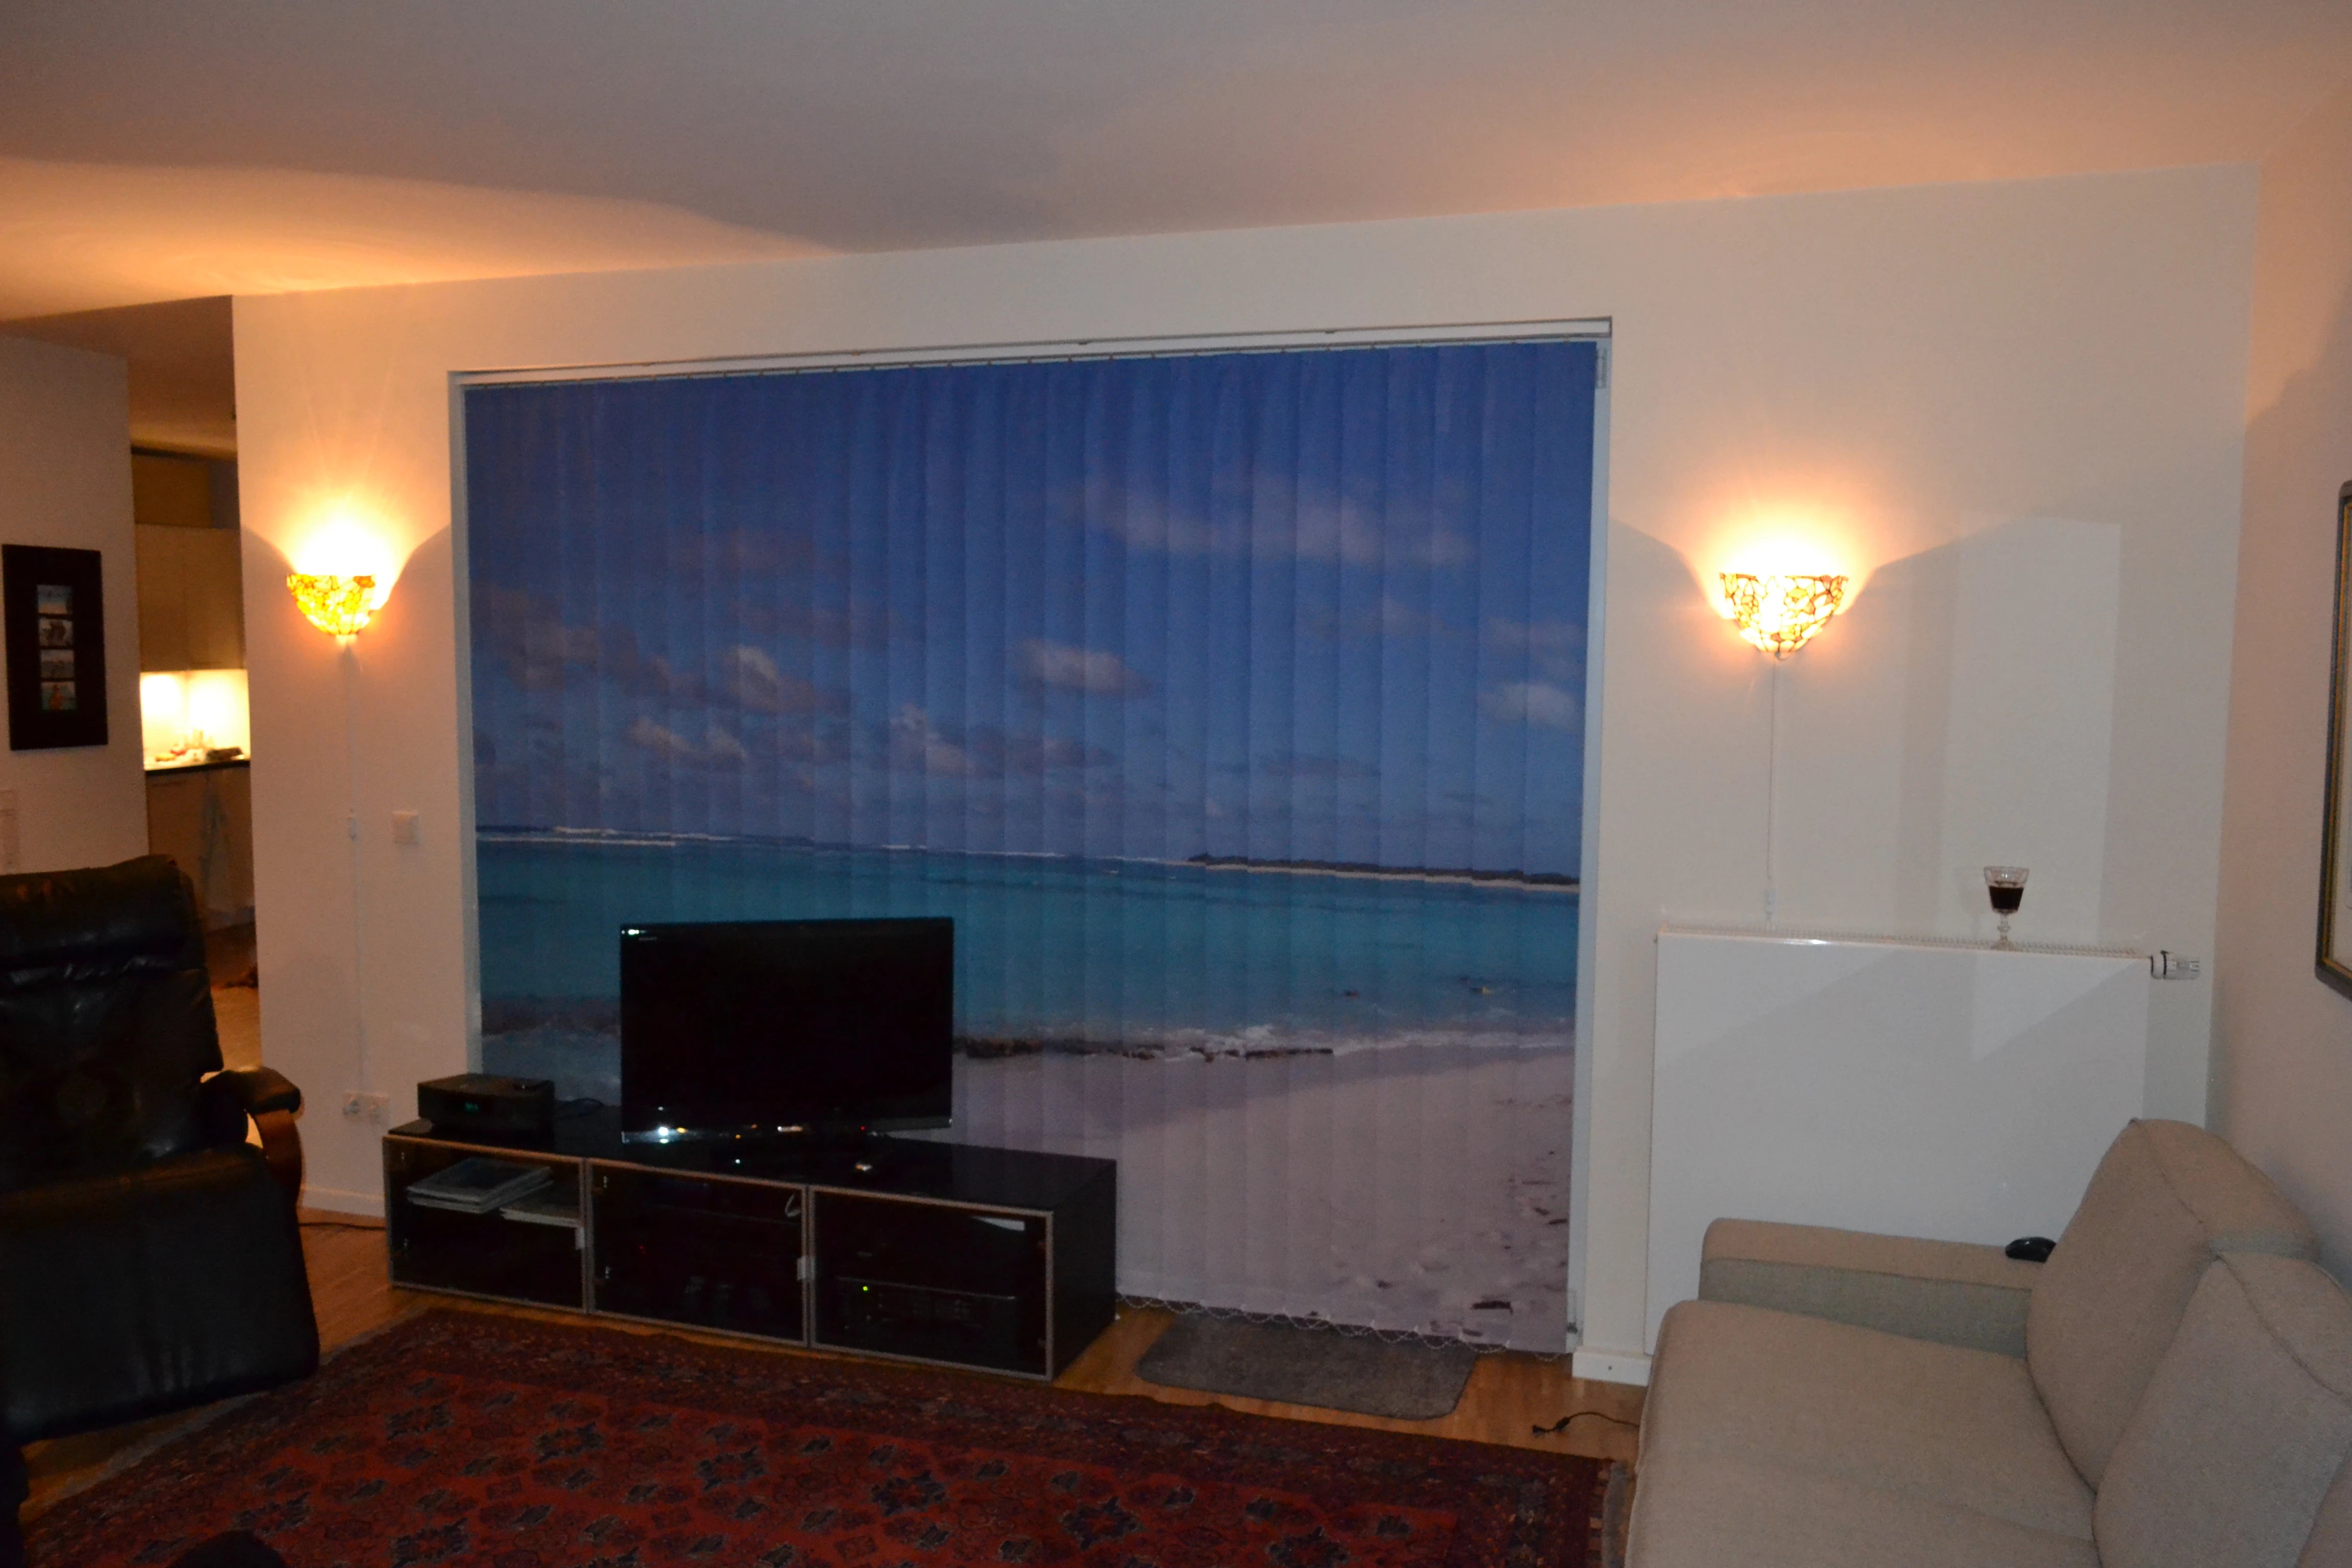 Ein klassisch eingerichtetes Wohnzimmer mit Sofa und Sessel. Auf einem Sideboard steht ein Fernseher. Das dahinter liegende Fenster wird mit einem Lamellenvorhang abgedeckt, das ein Strandmotiv aus der Südsee zeigt